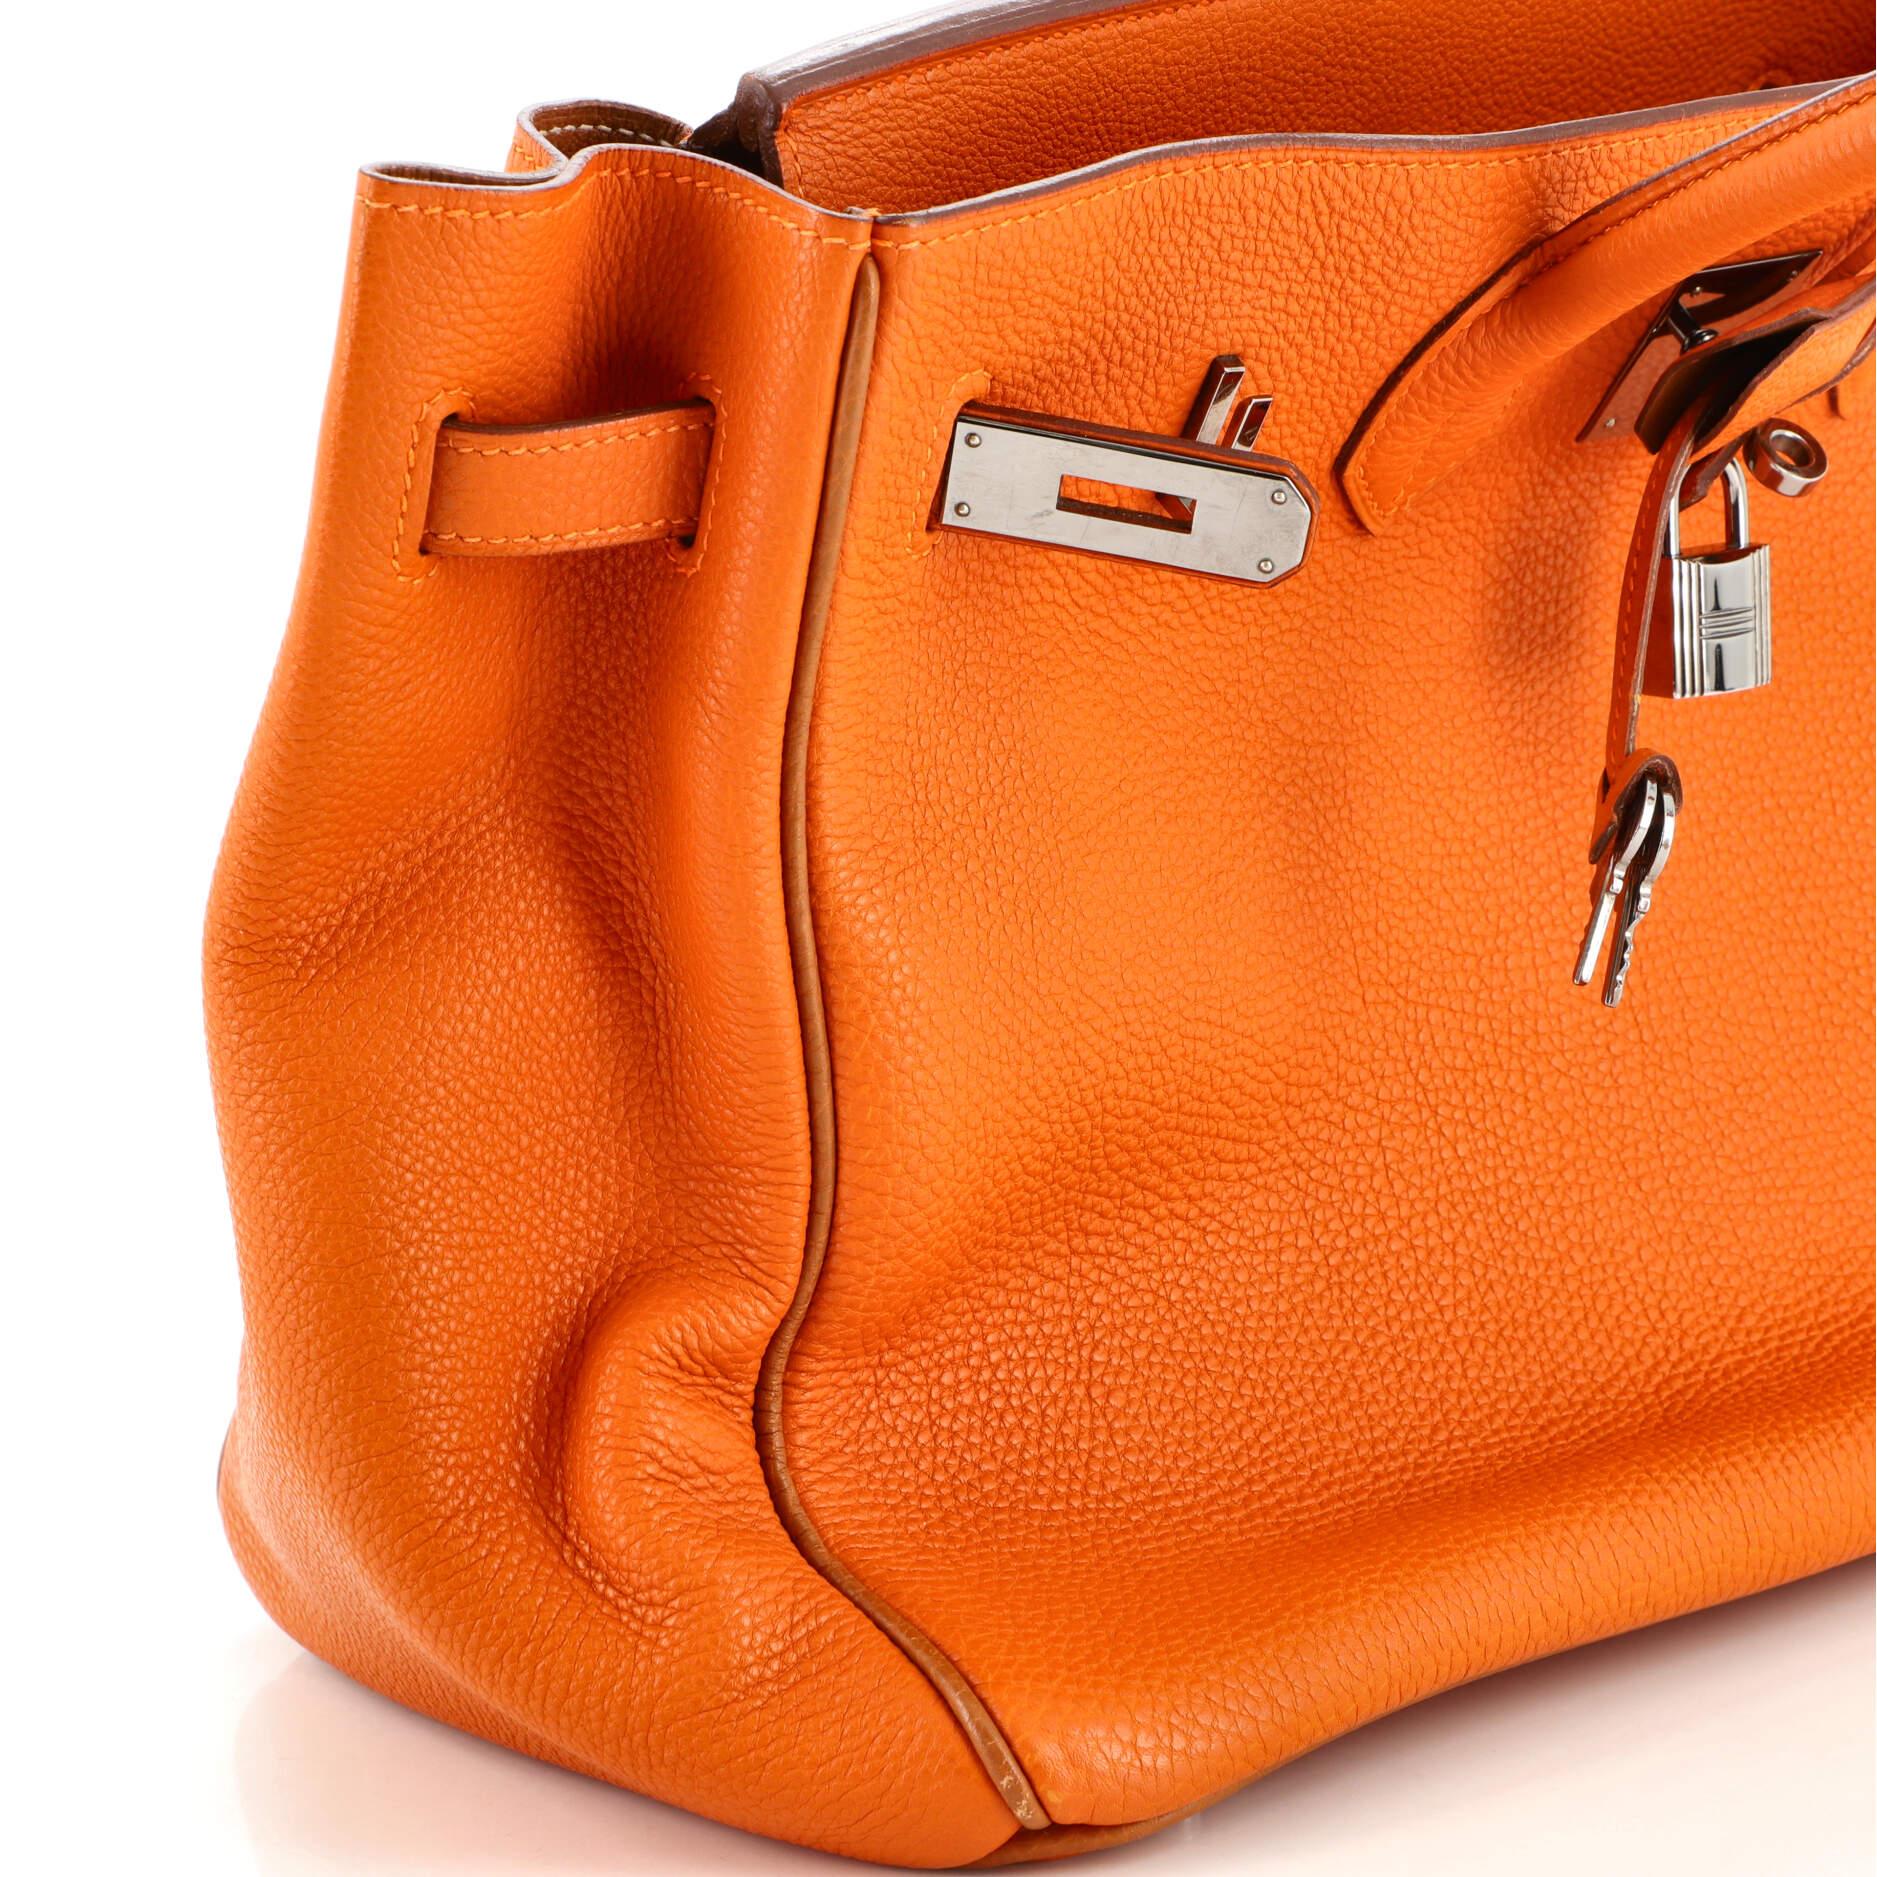 Women's or Men's Hermes Birkin Handbag Bicolor Togo with Ruthenium Hardware 35